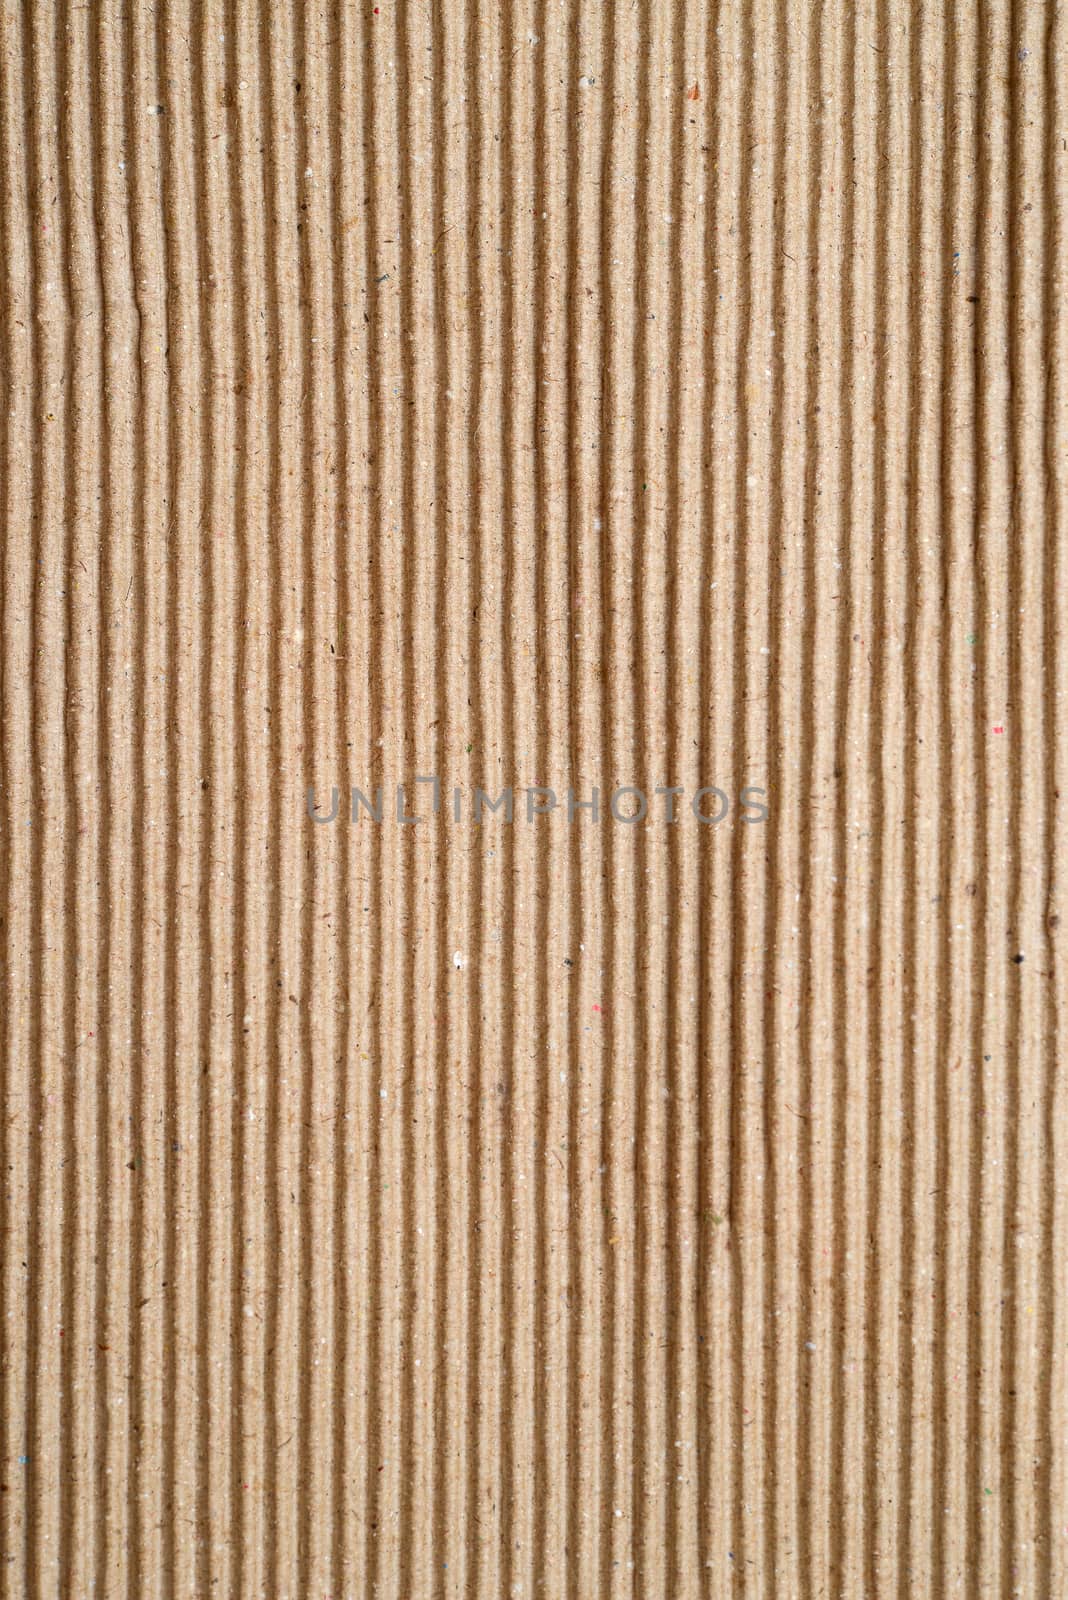 old corrugated cardboard sheet by antpkr